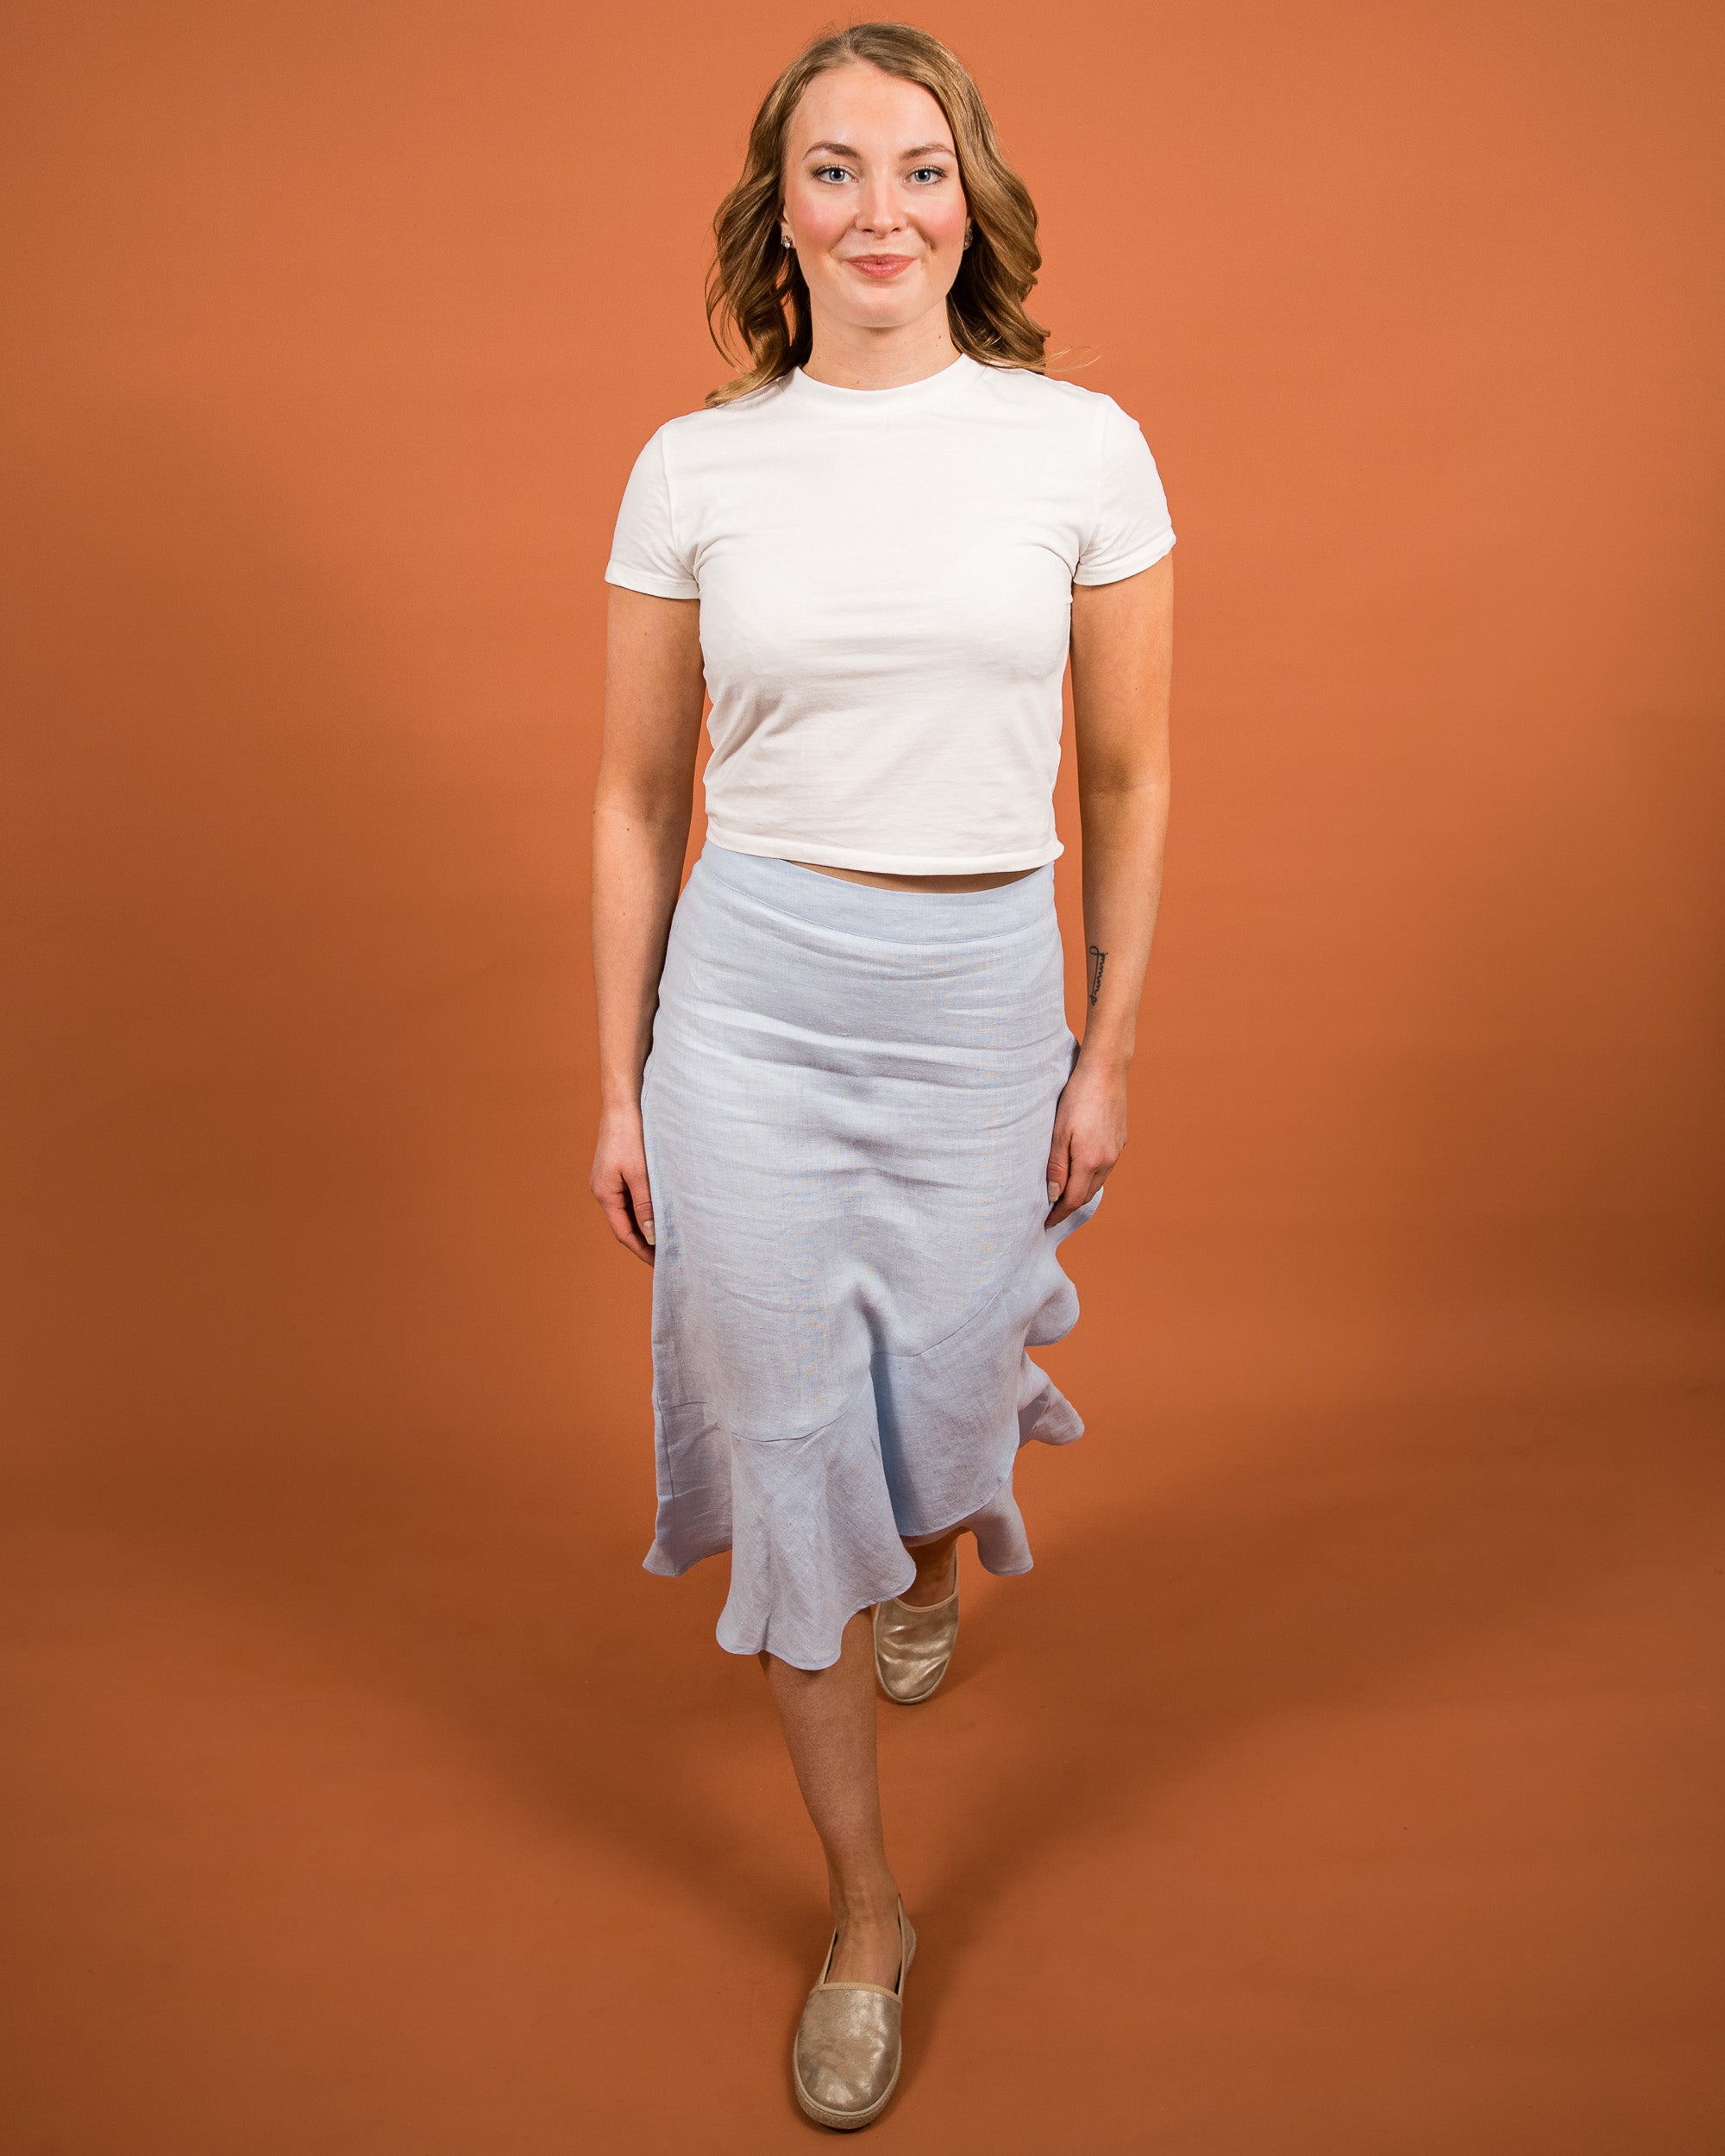 Linen Ruffle Skirt, Sky Blue